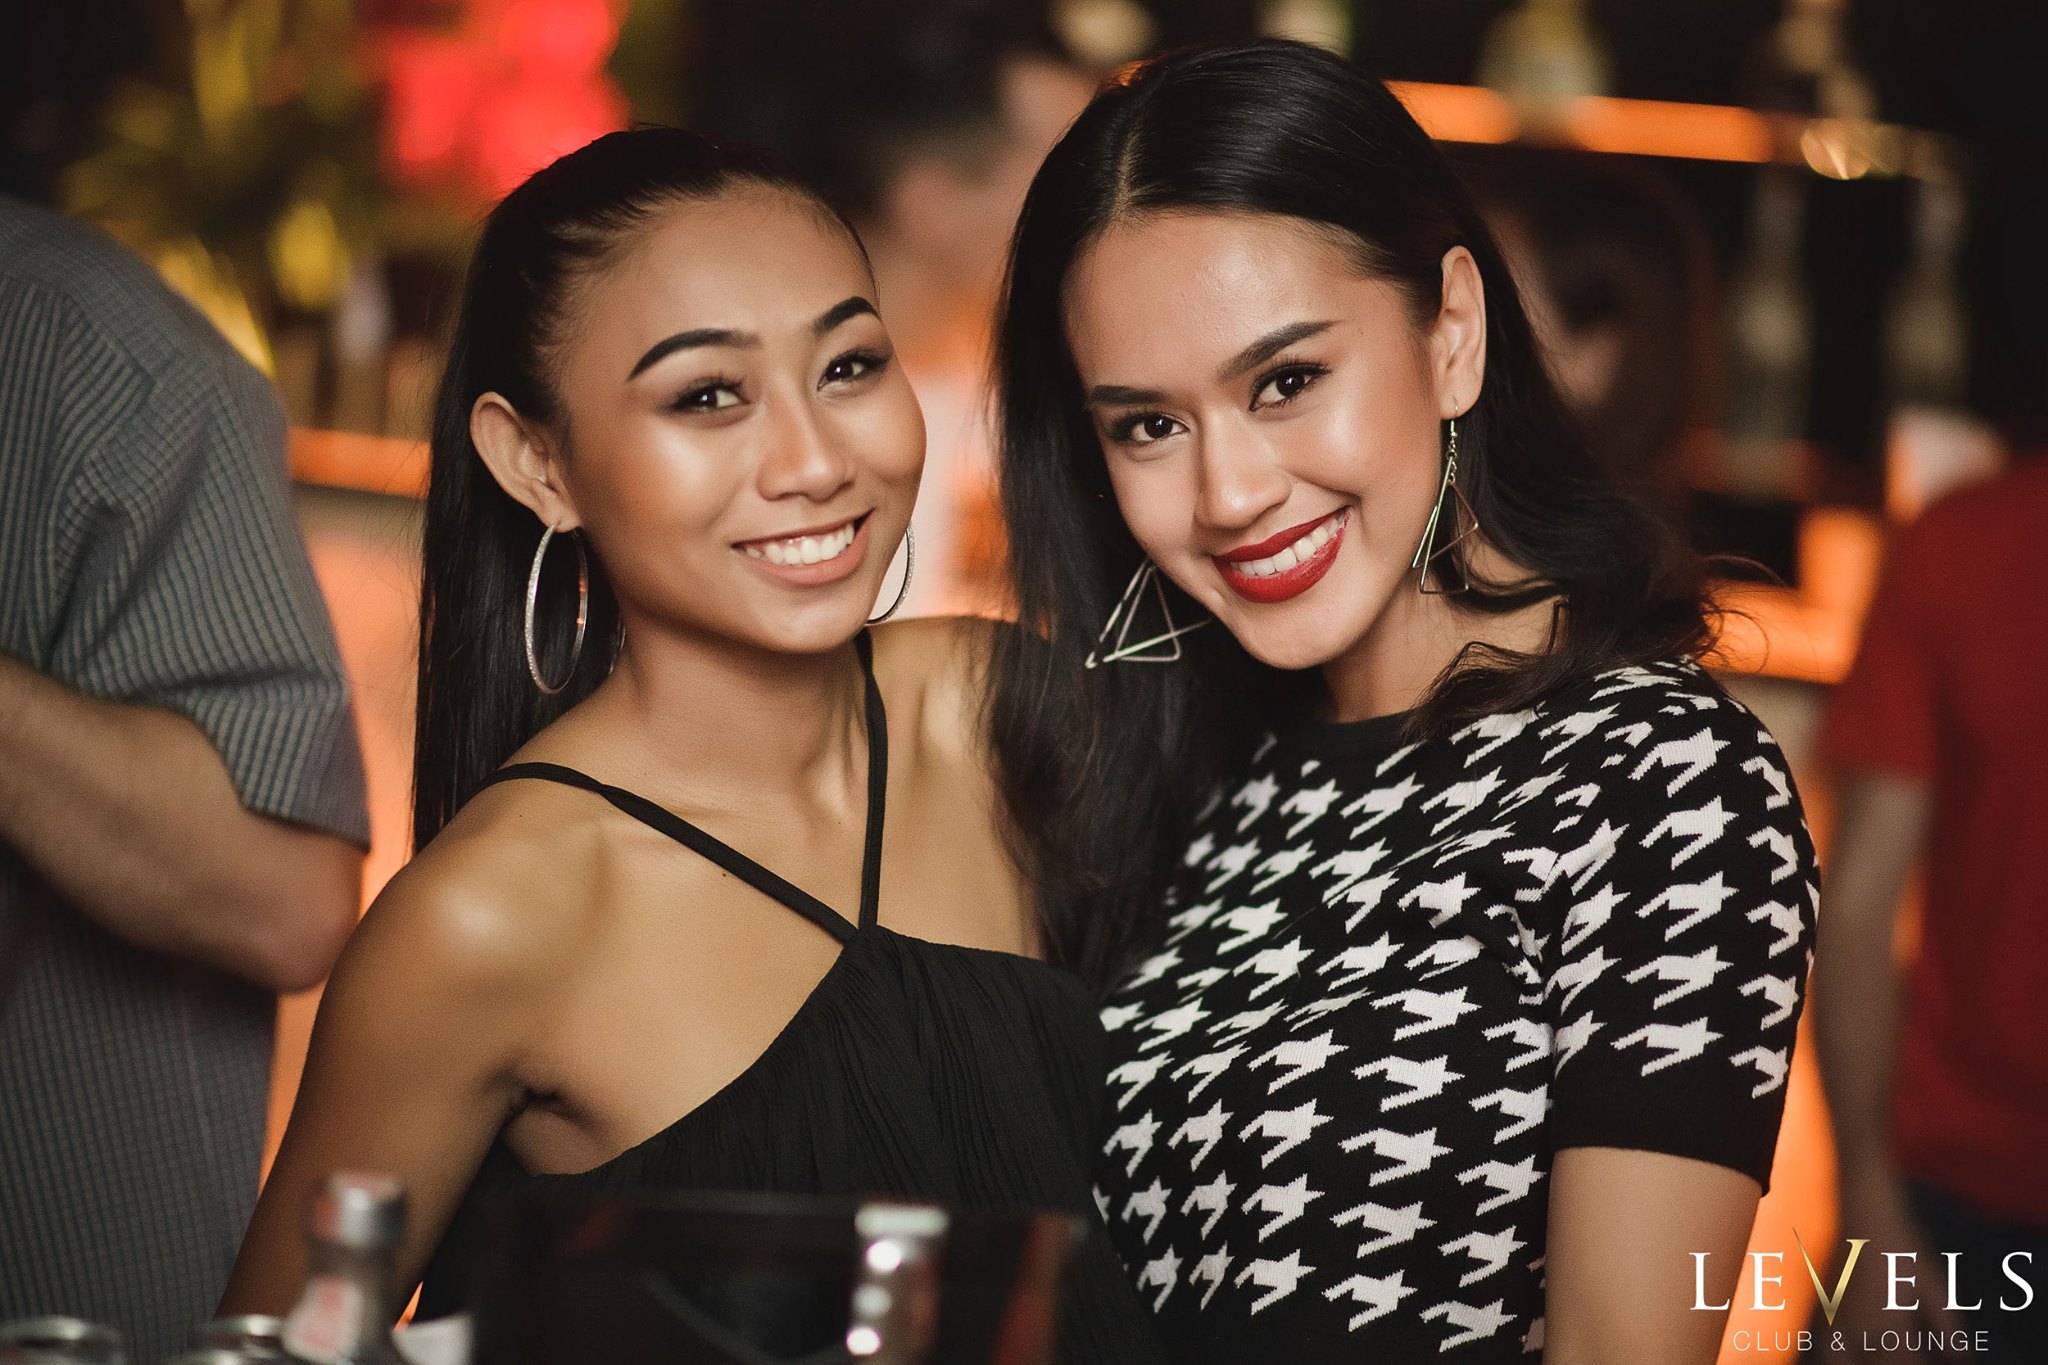 Бангкок девушки. Бангкок девушки ночные. Тайланд девушки бар. Девушки из Бангкока в ночном клубе.